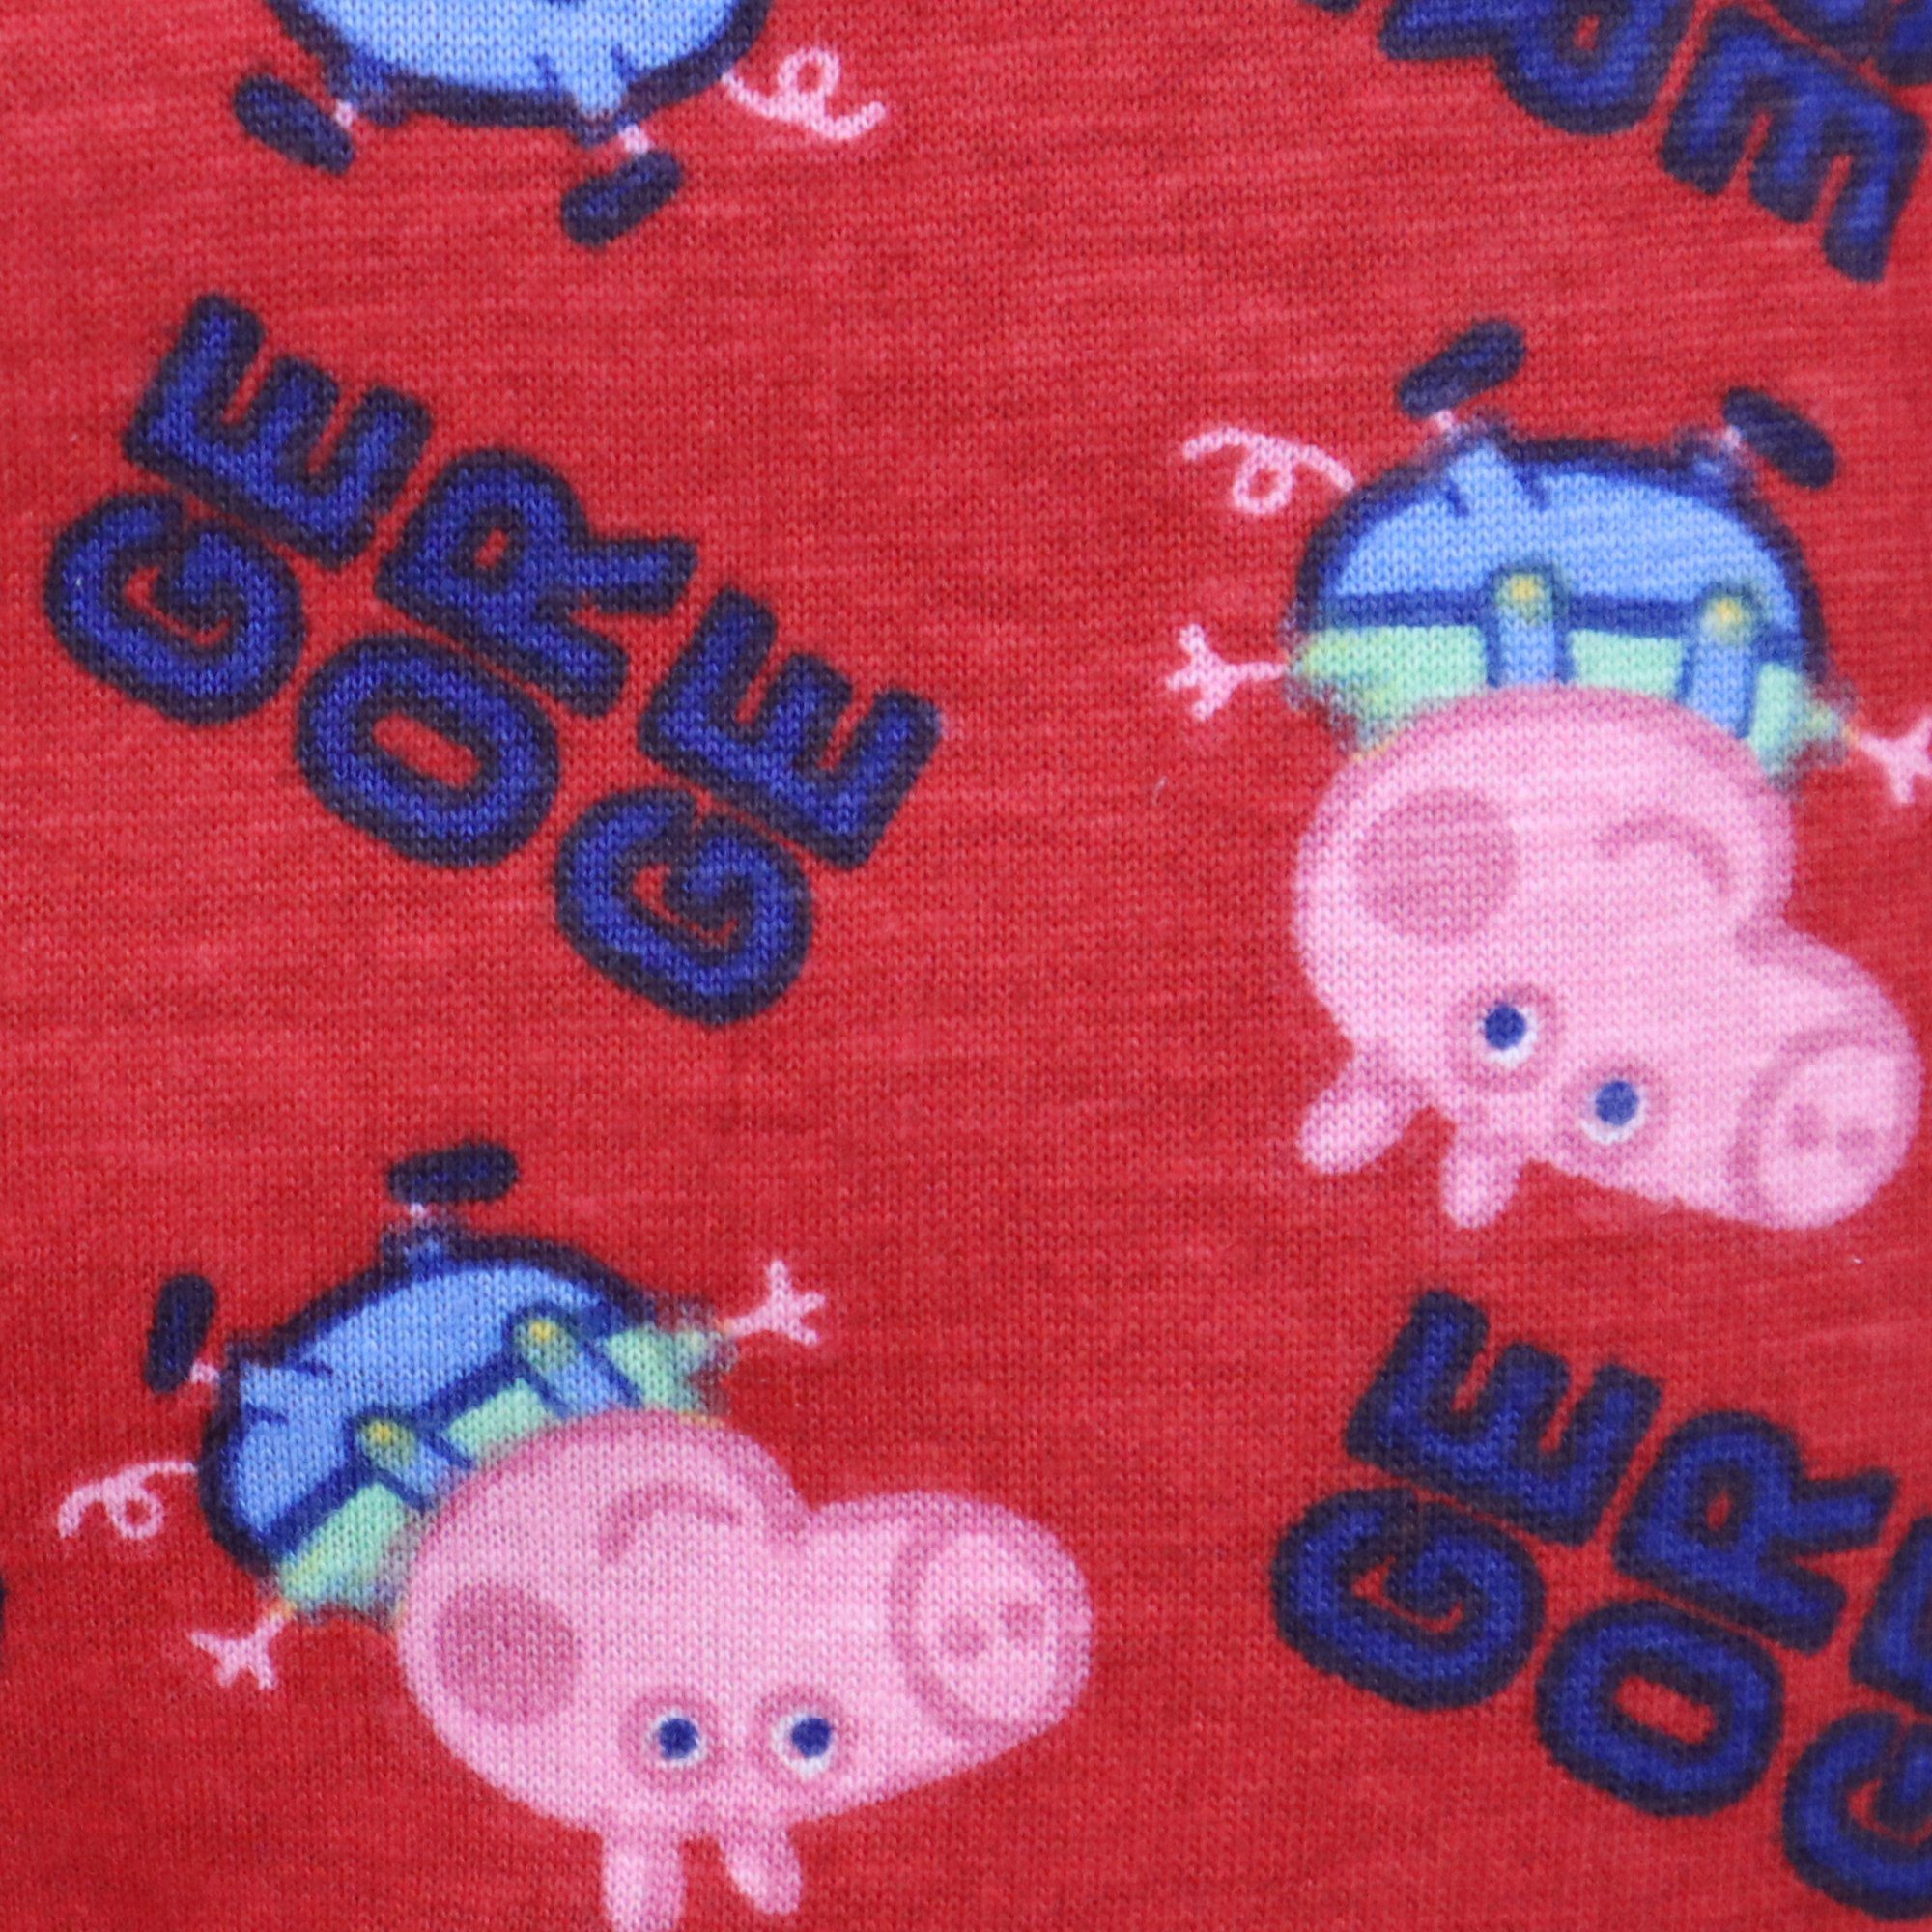 Peppa Pig Pyjama Peppa Gr. 104 Jungen 134 Blau Kinder Pig Schlafanzug bis George Wutz